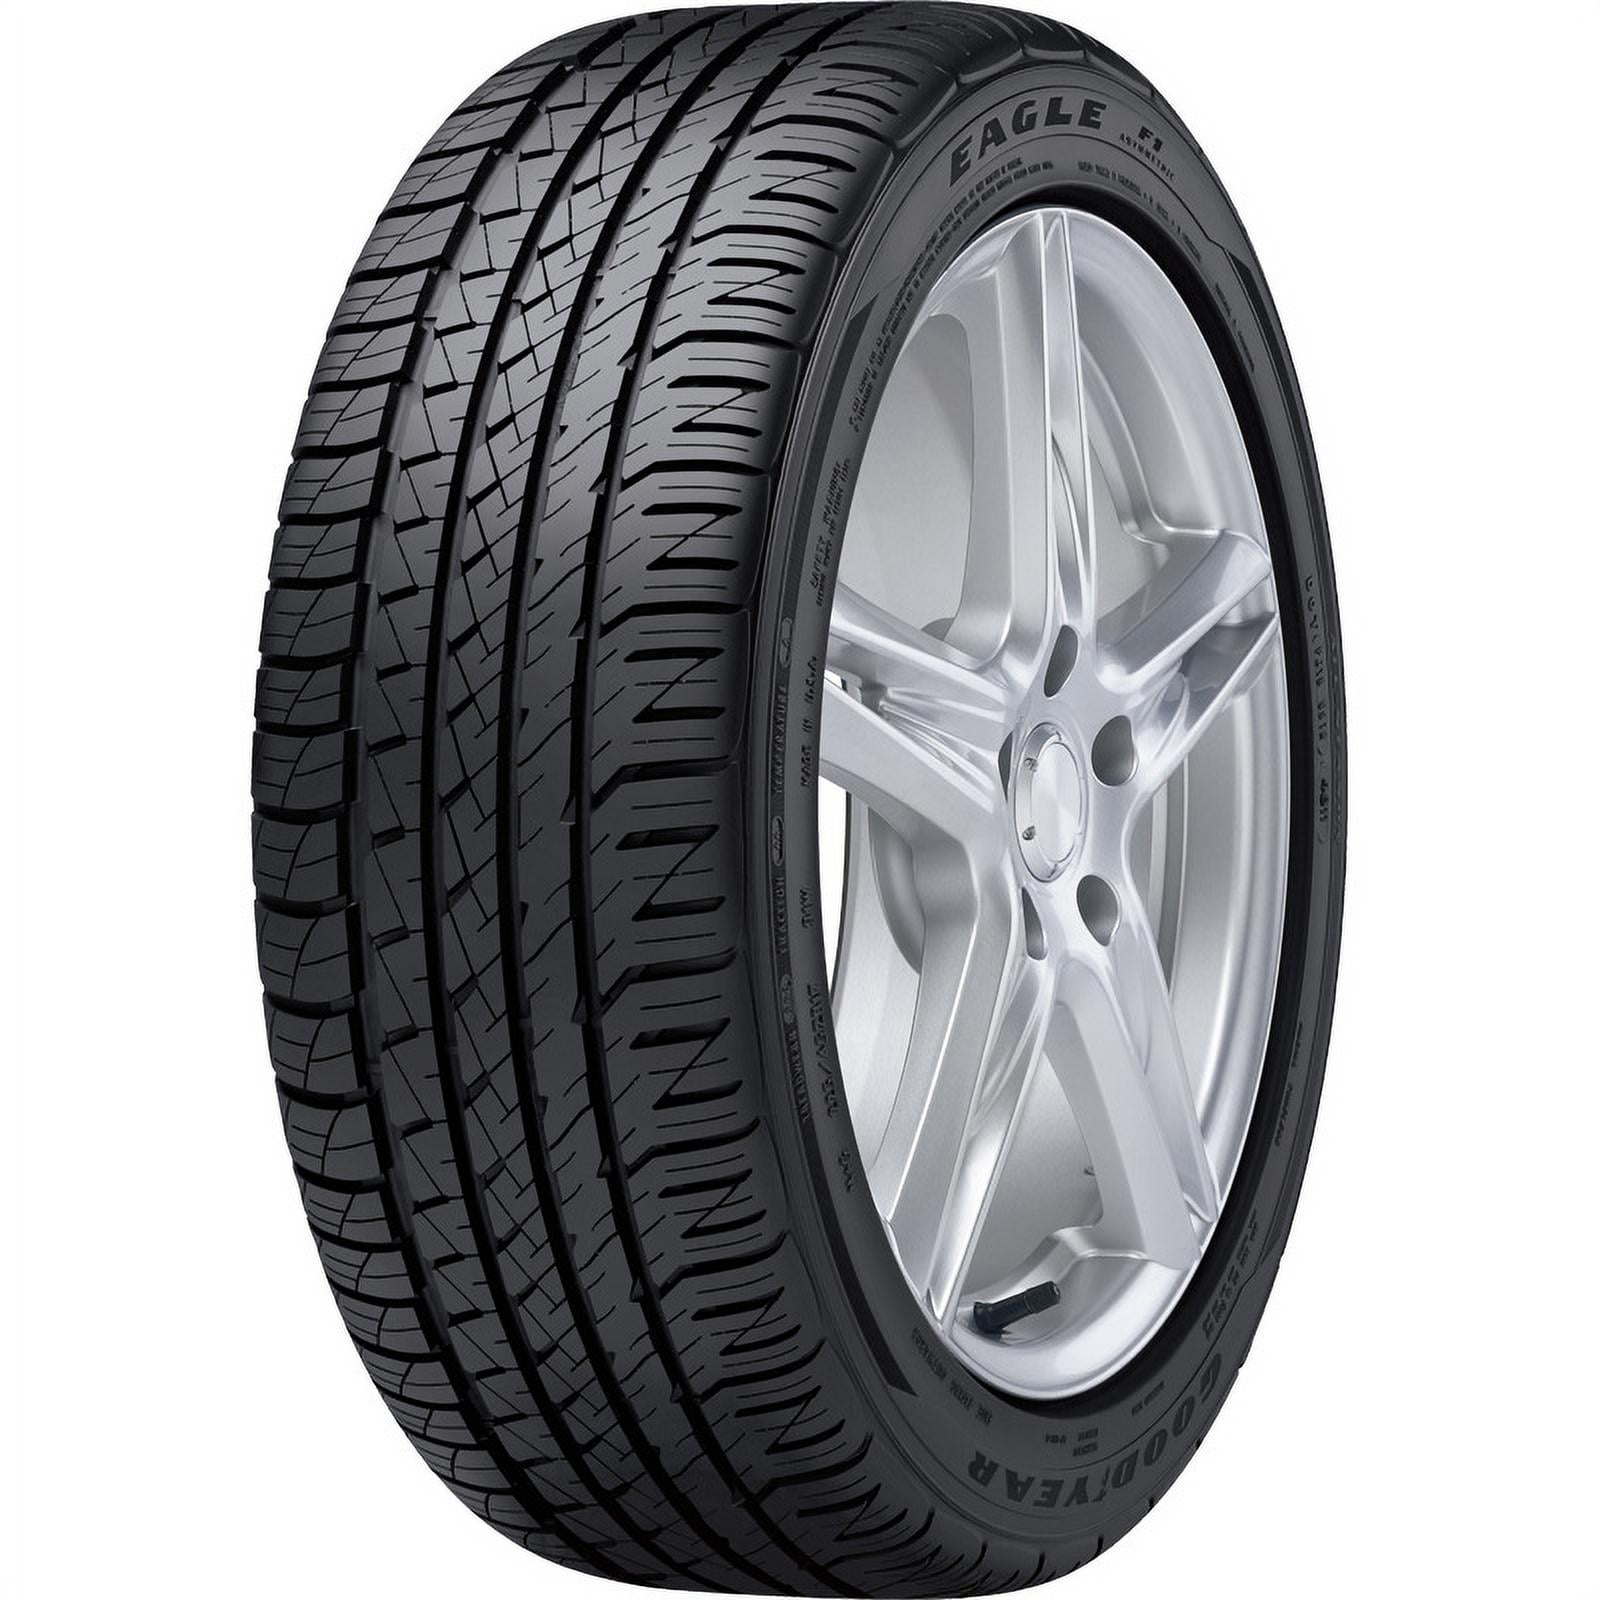 All-Season F1 99 255/45R18 Goodyear Tire Asymmetric Eagle W